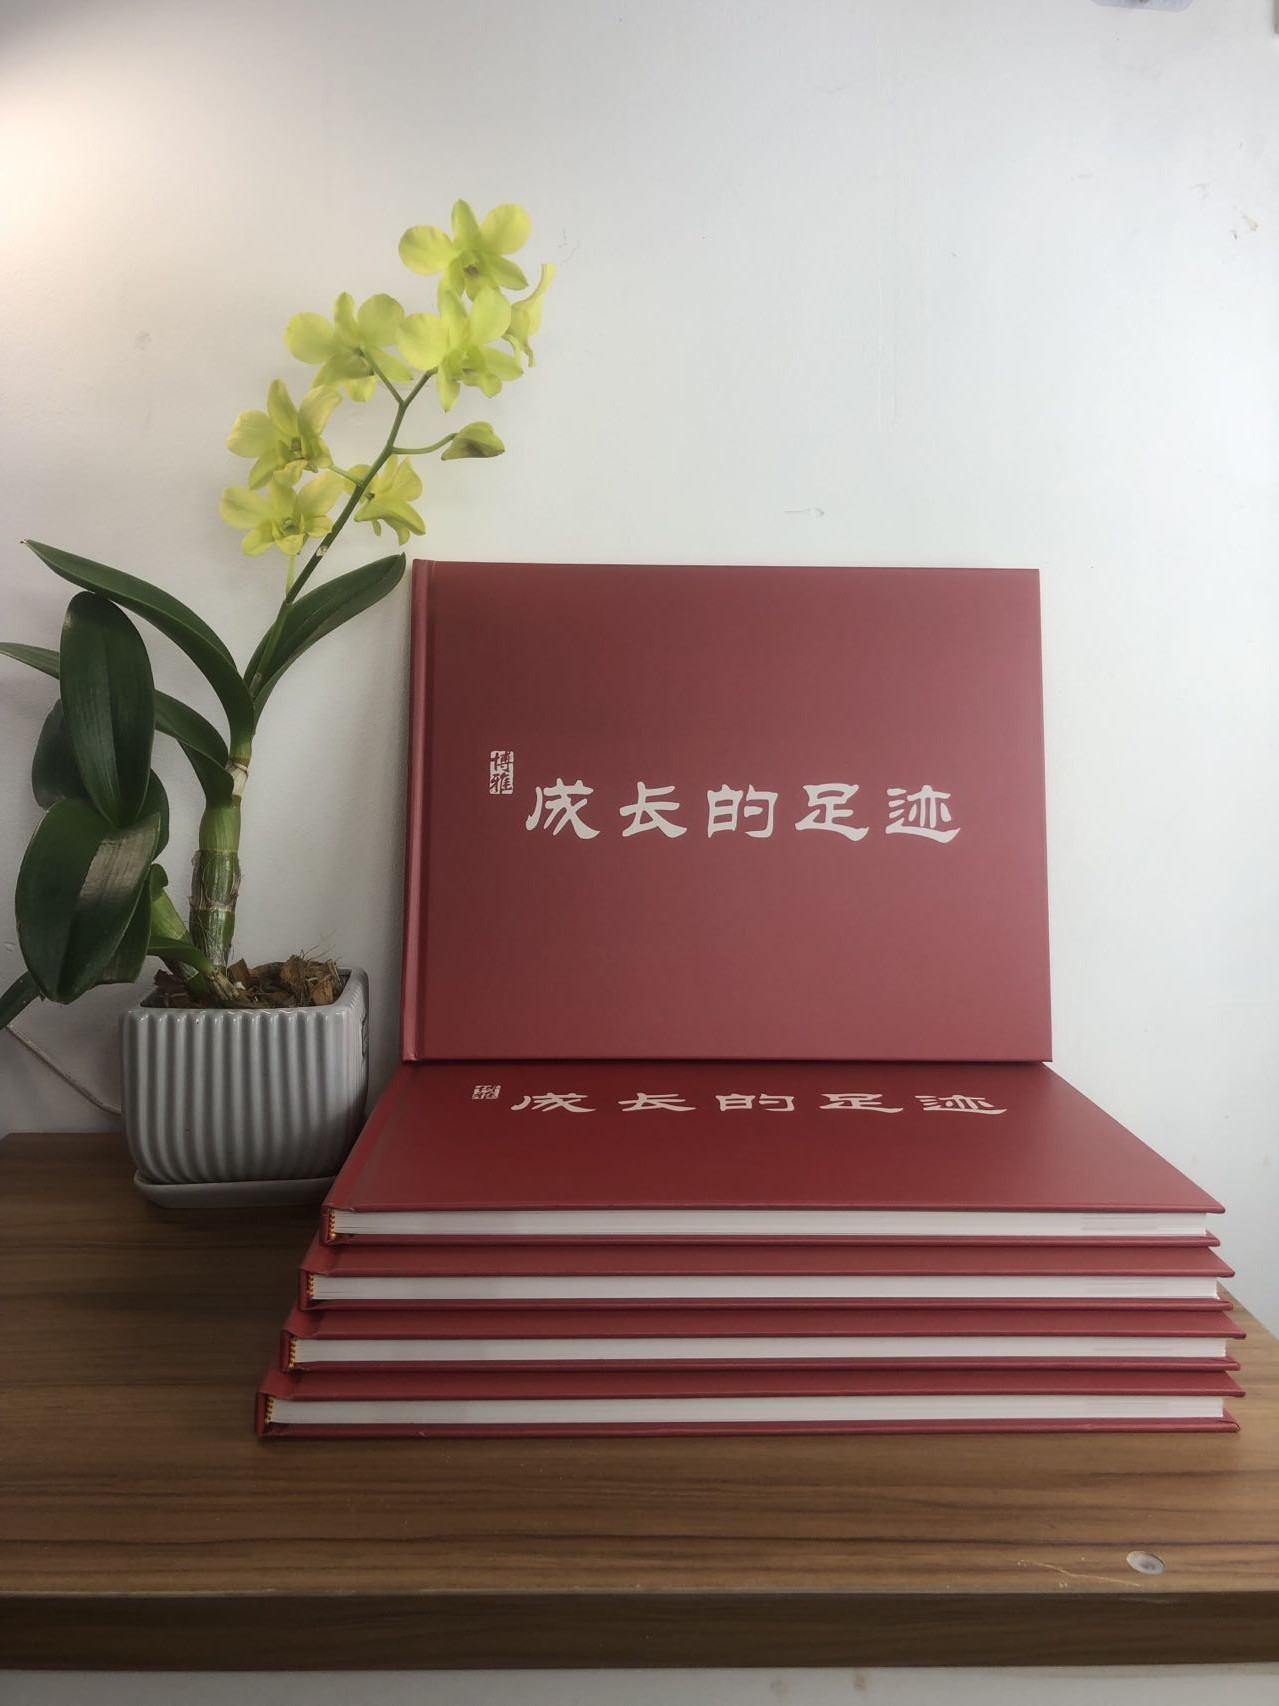 广州印刷厂- 精装书,精装画册,精装宣传册,精装企业宣传册